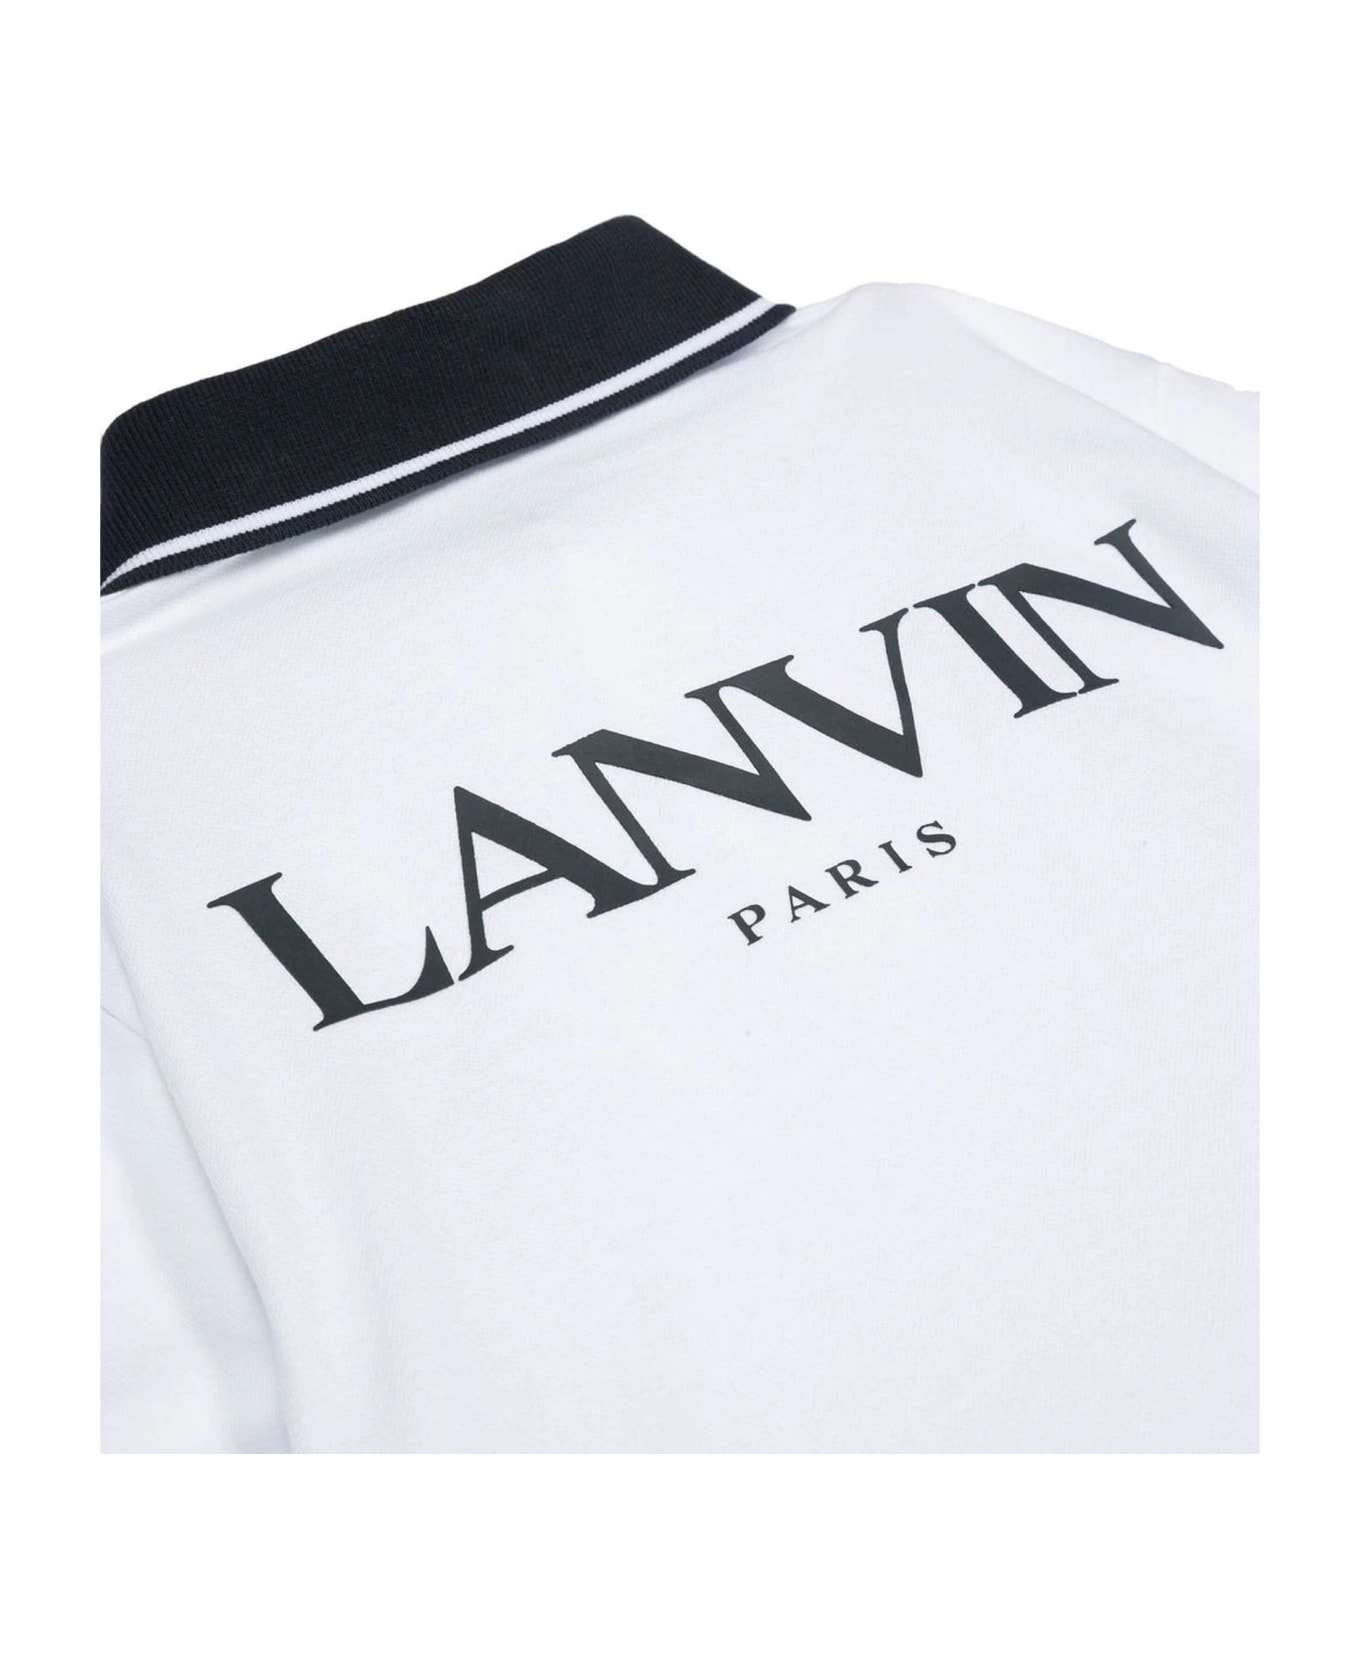 Lanvin White Cotton Polo Dress Shirt - Bianco